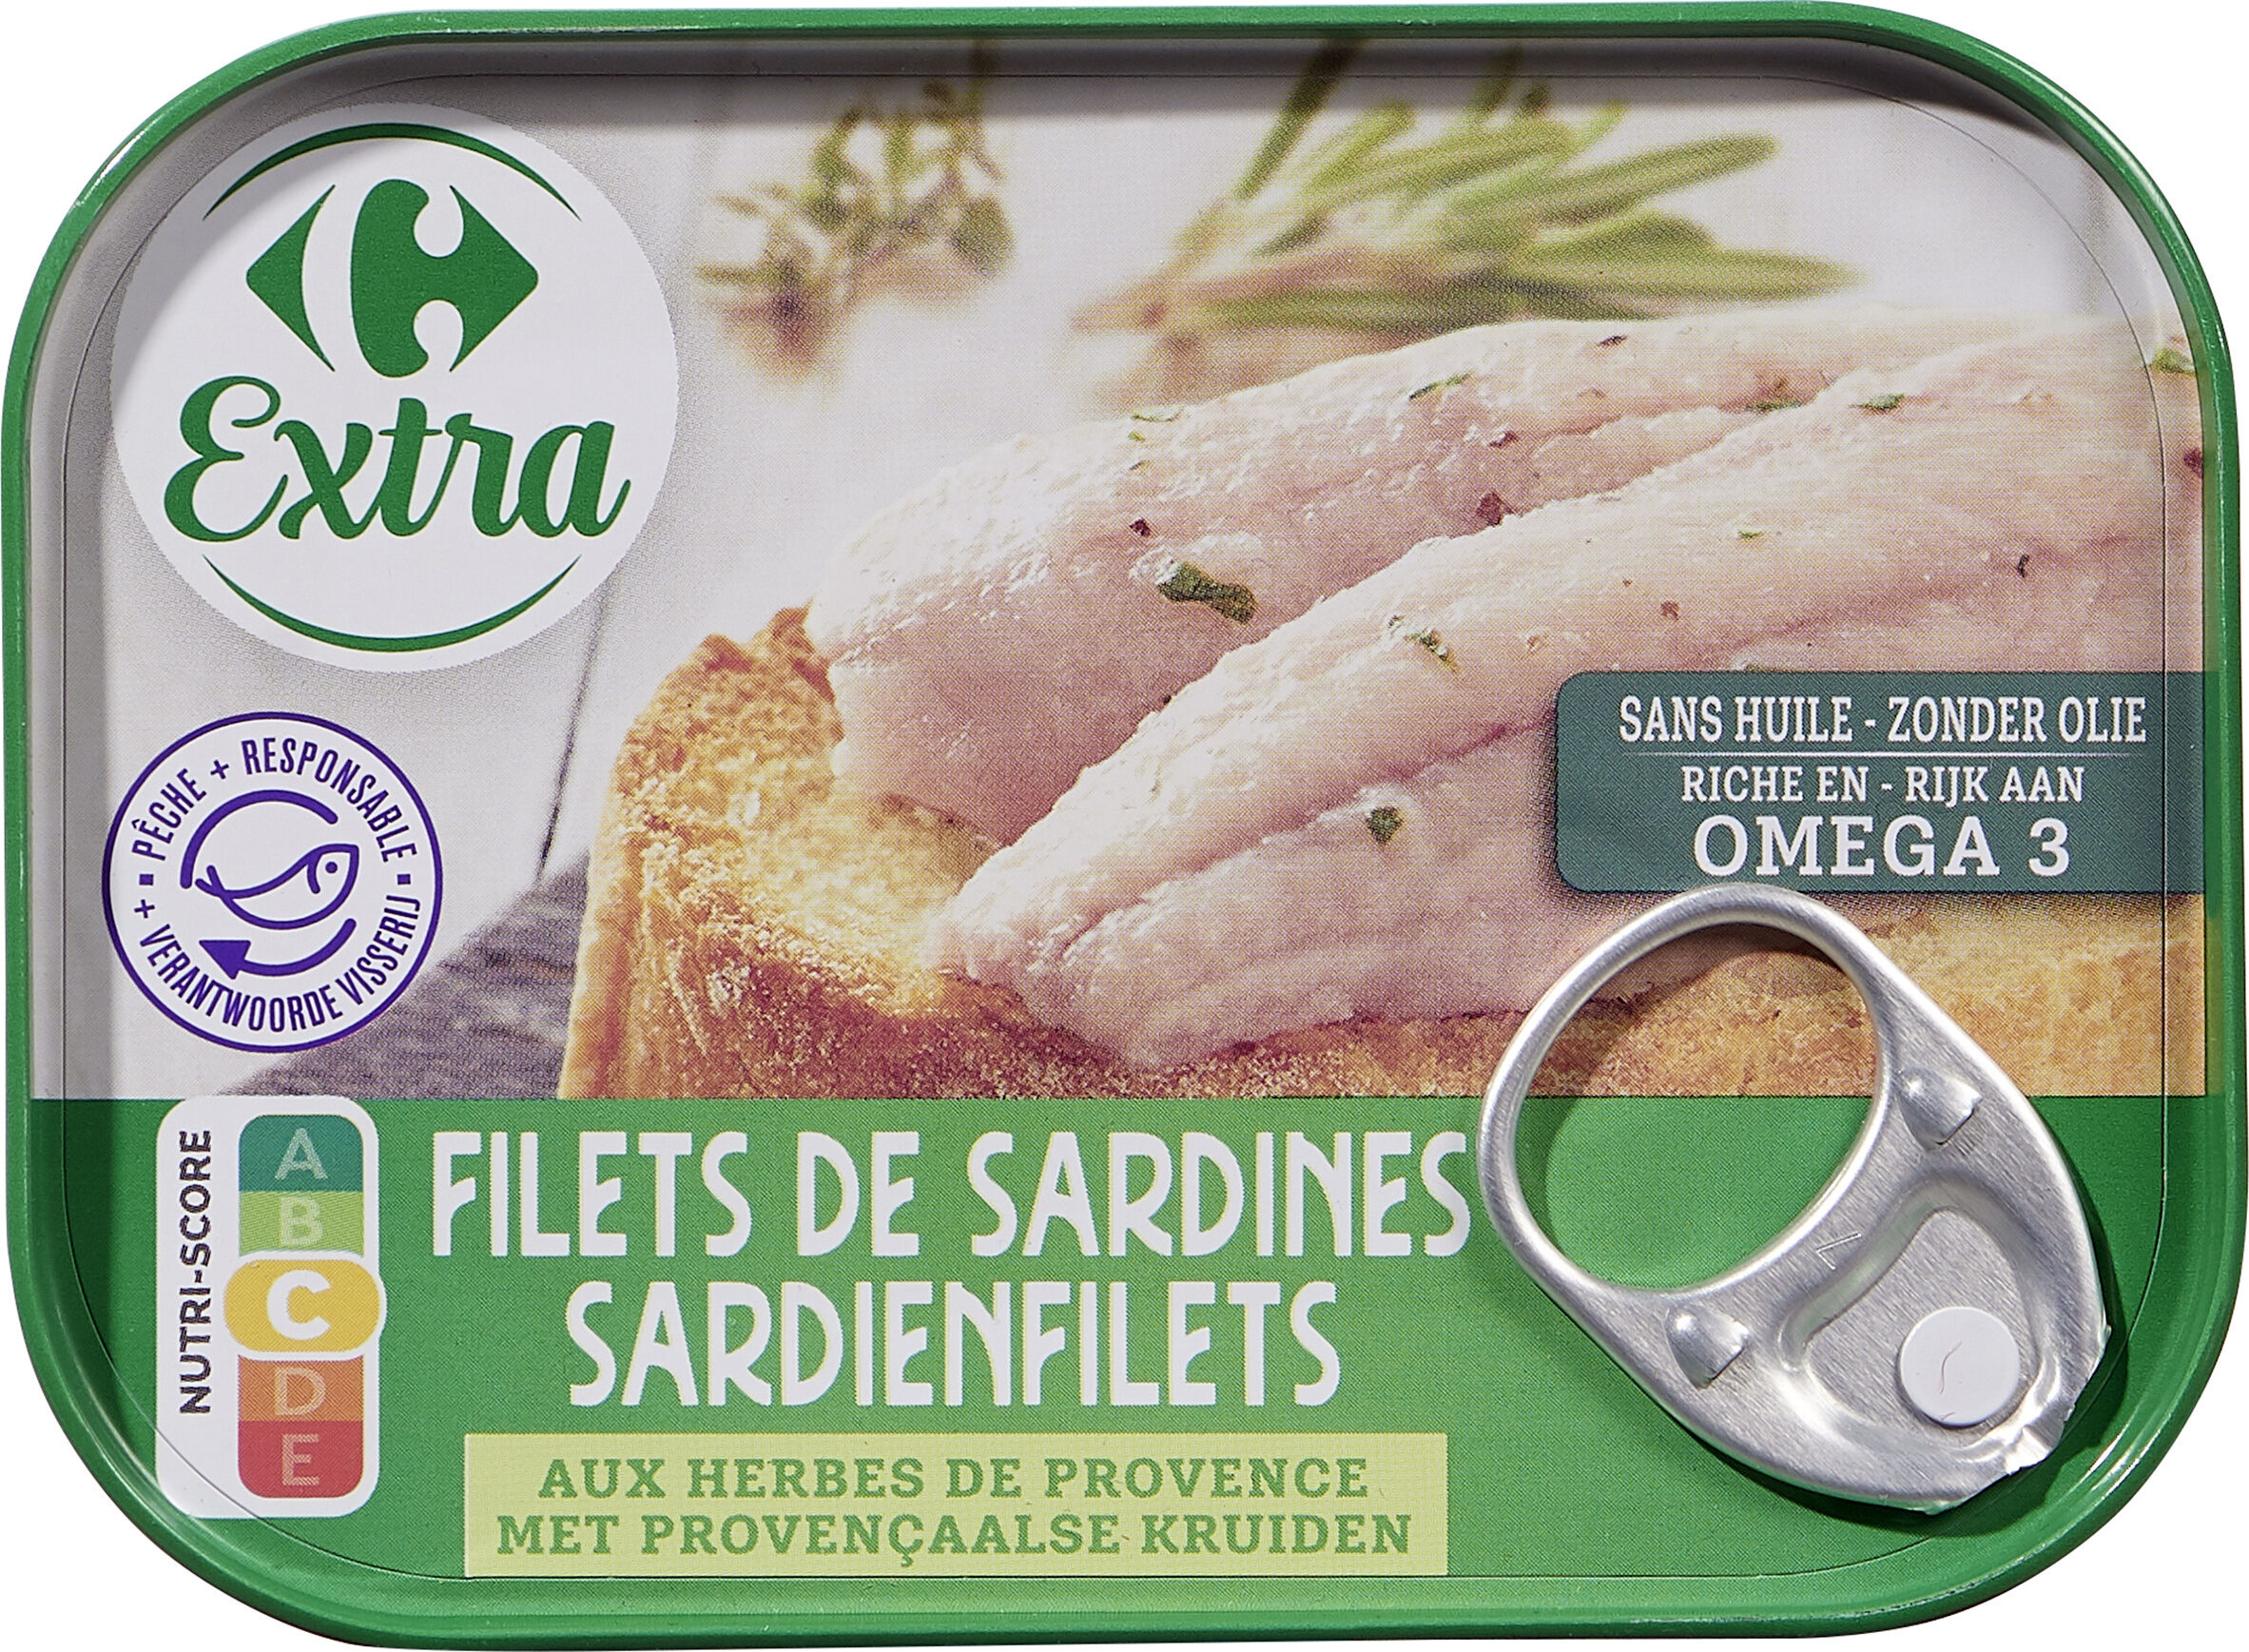 Filets de sardines aux herbes de provence - Product - fr